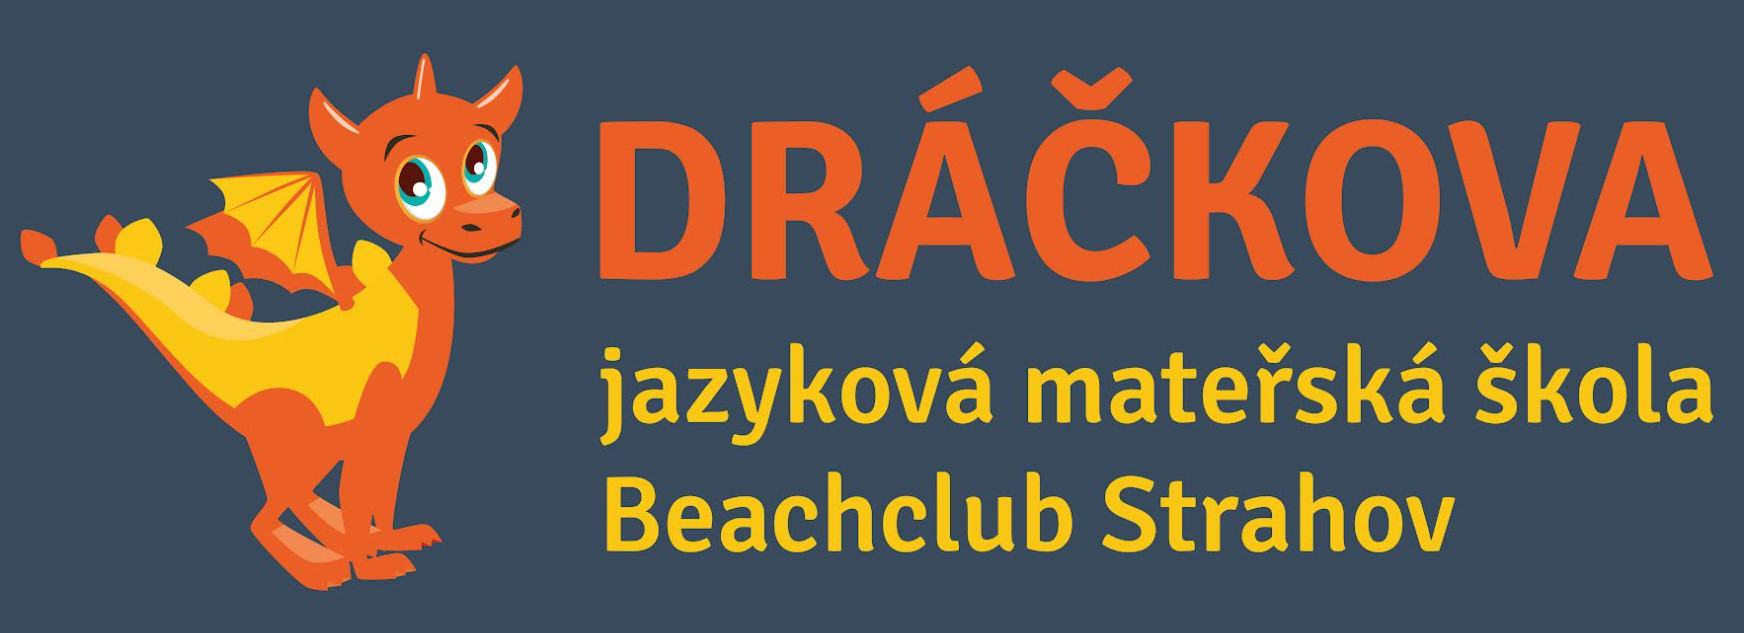 Dráčkova jazyková mateřská škola Beachclub Strahov